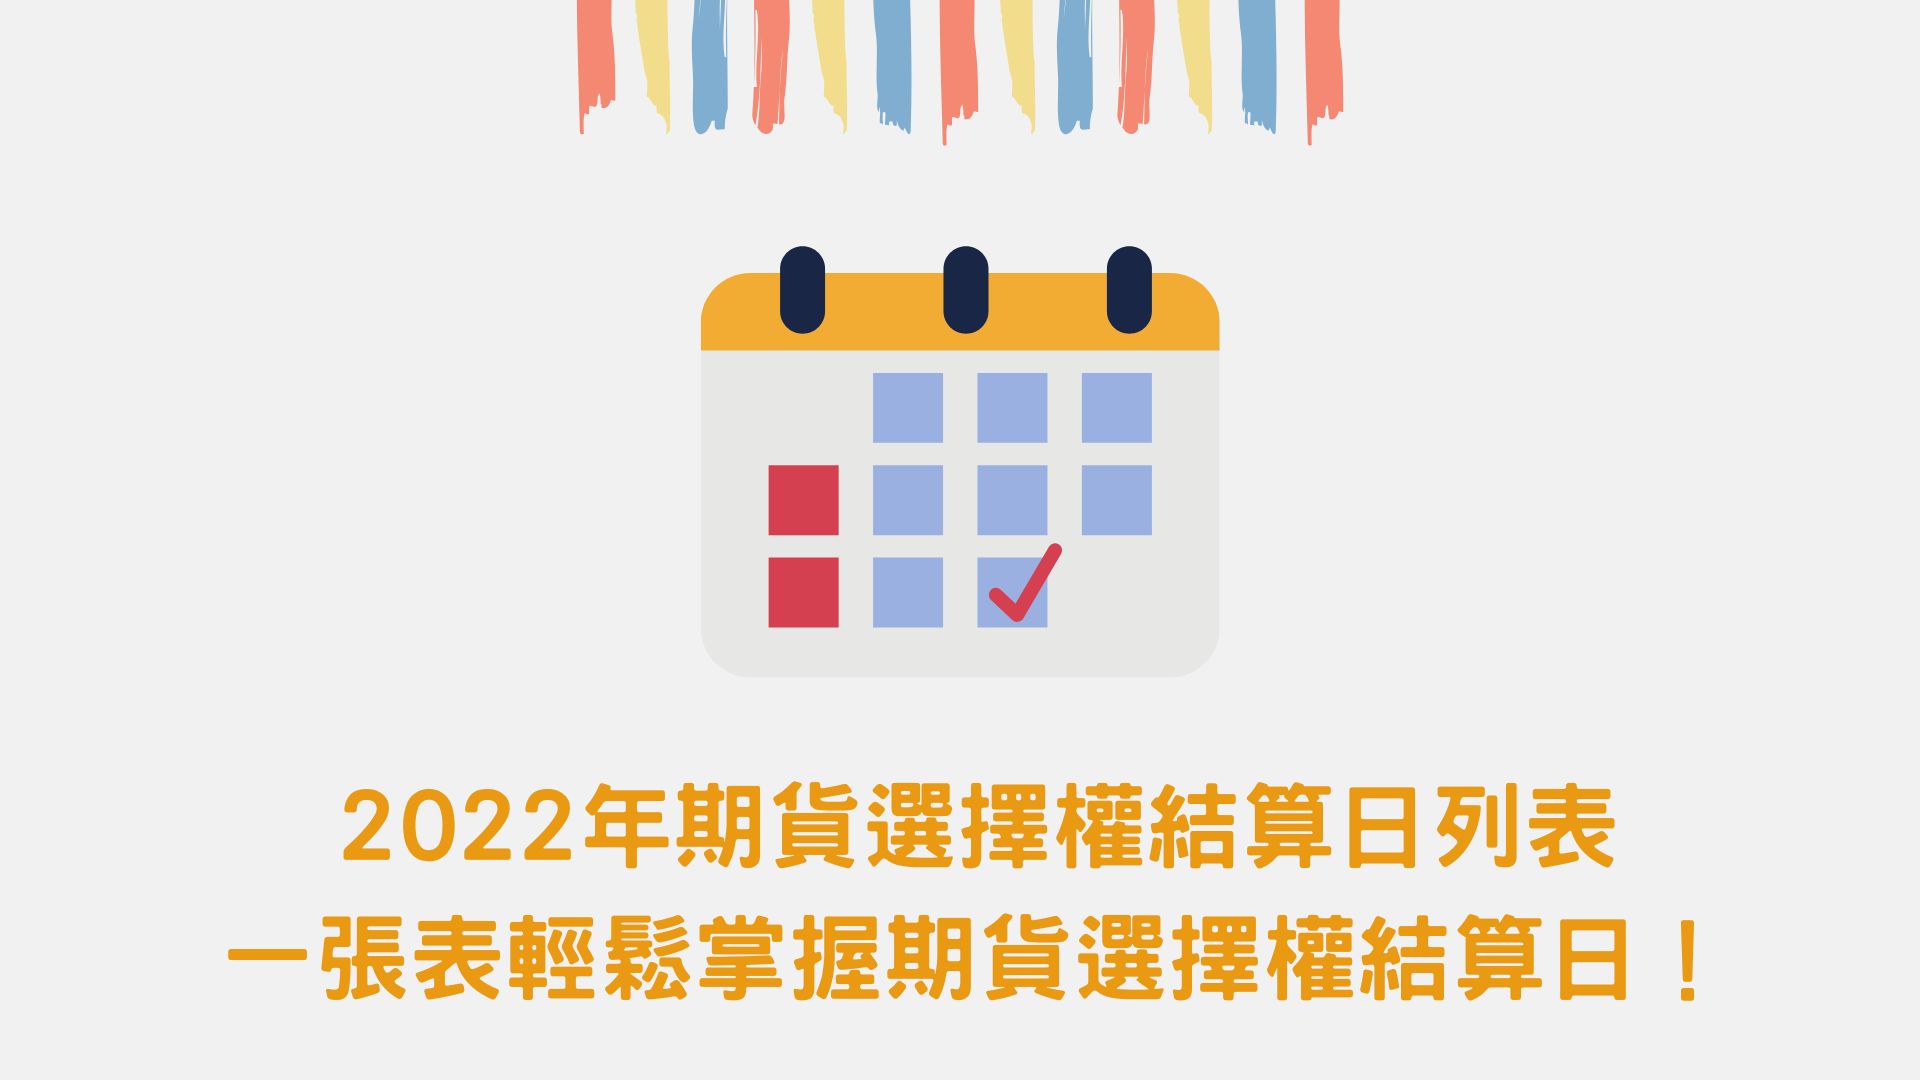 2022年期貨選擇權結算日列表